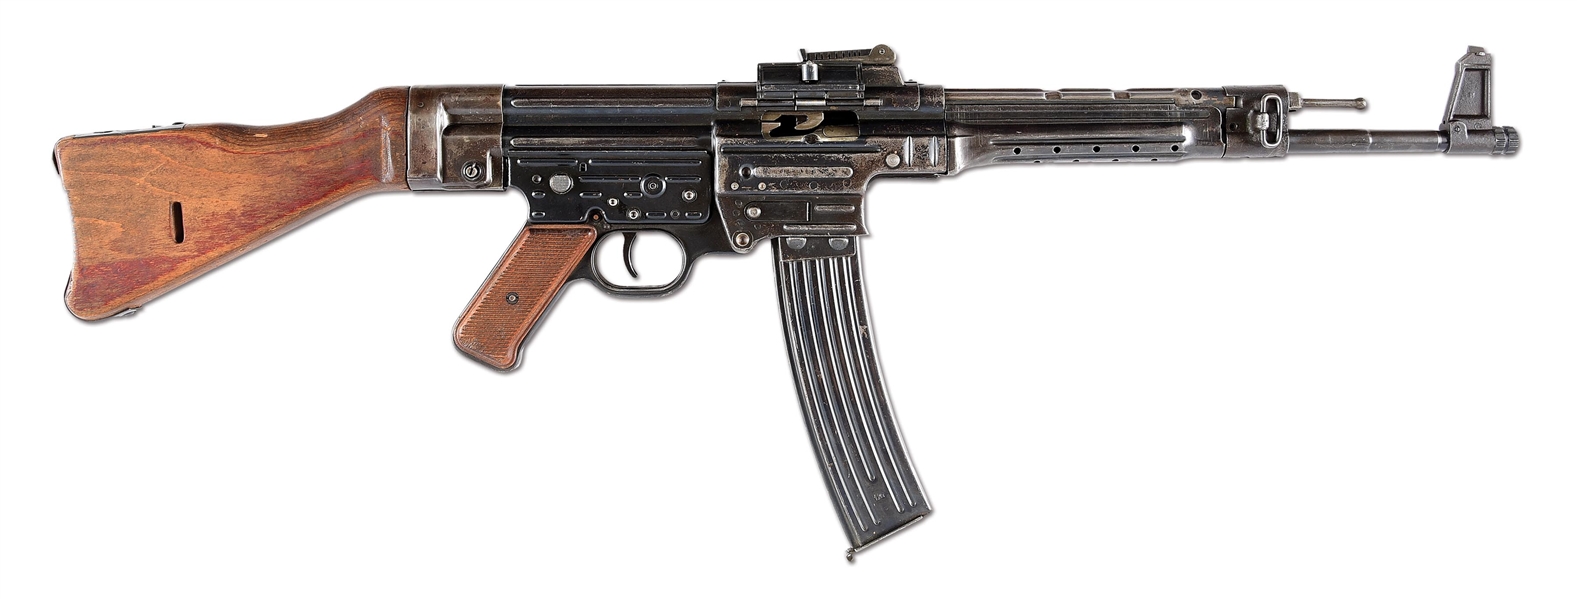 (N) GERMAN WORLD WAR II STEYR MP44 MACHINE GUN WITH ORIGINAL AMNESTY & STATE REGISTRATION PAPERWORK (CURIO & RELIC).